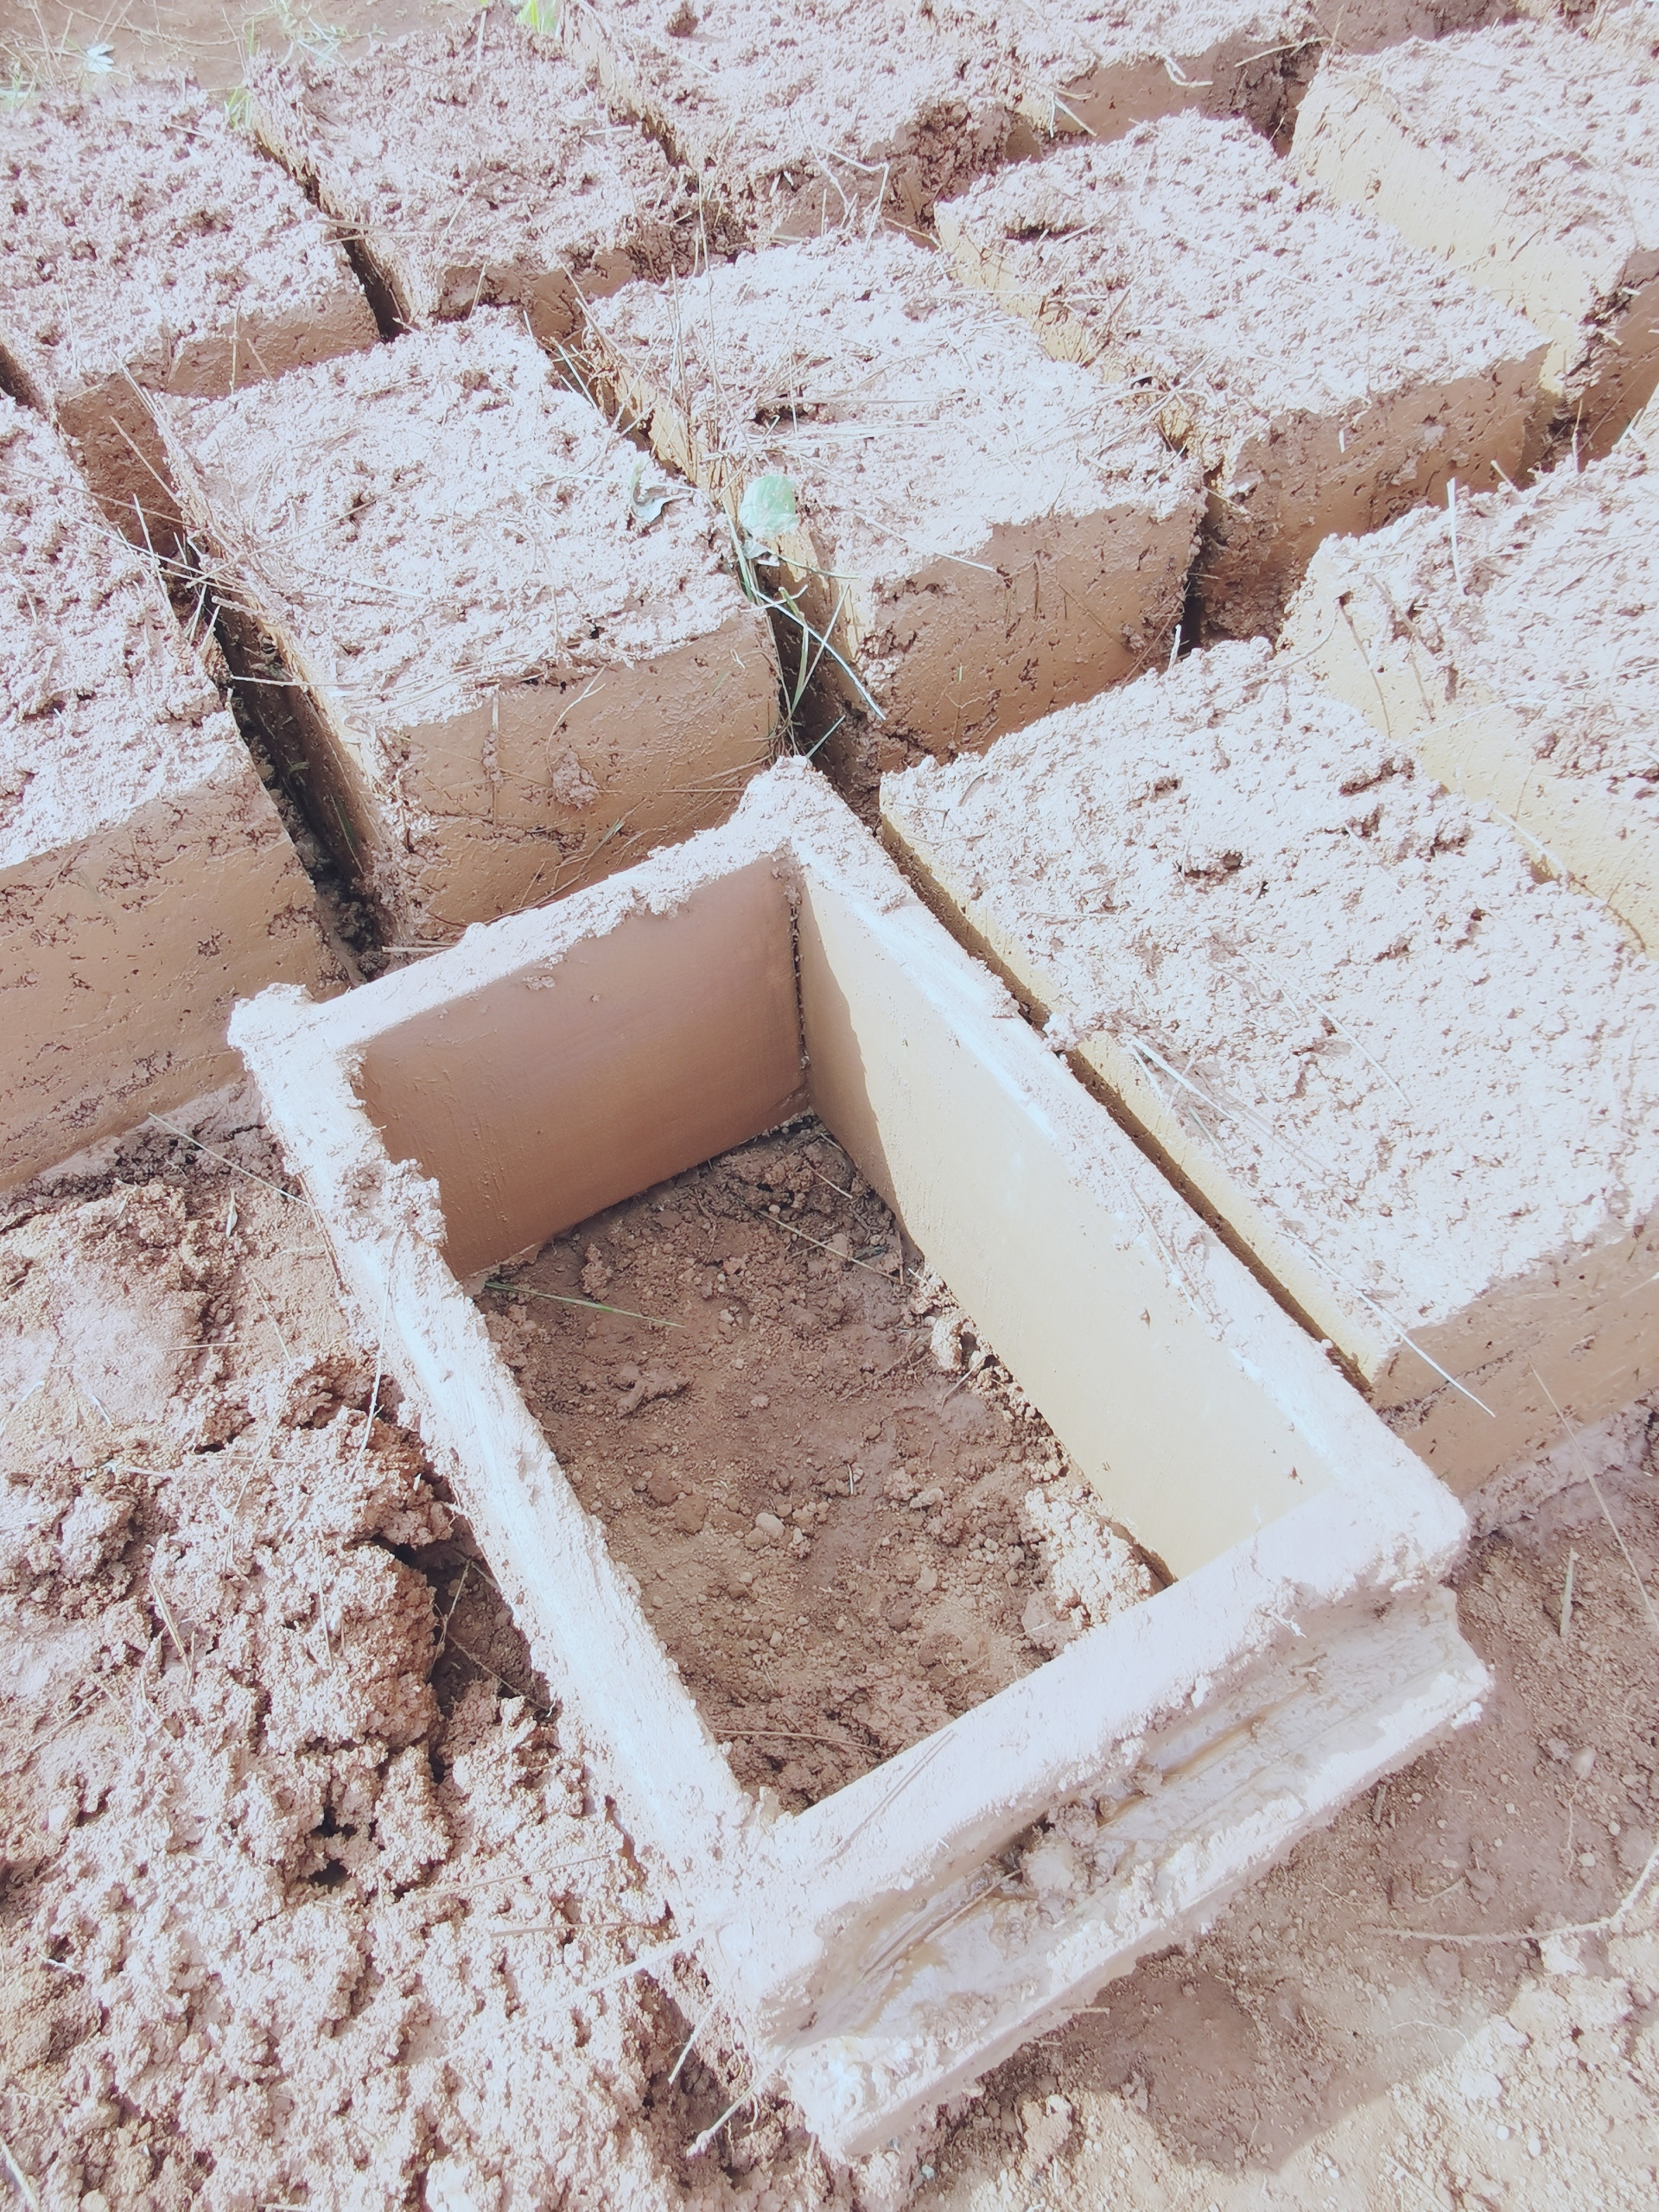 非洲的房子以土房子居多,但是它用的砖是怎么做的呢?